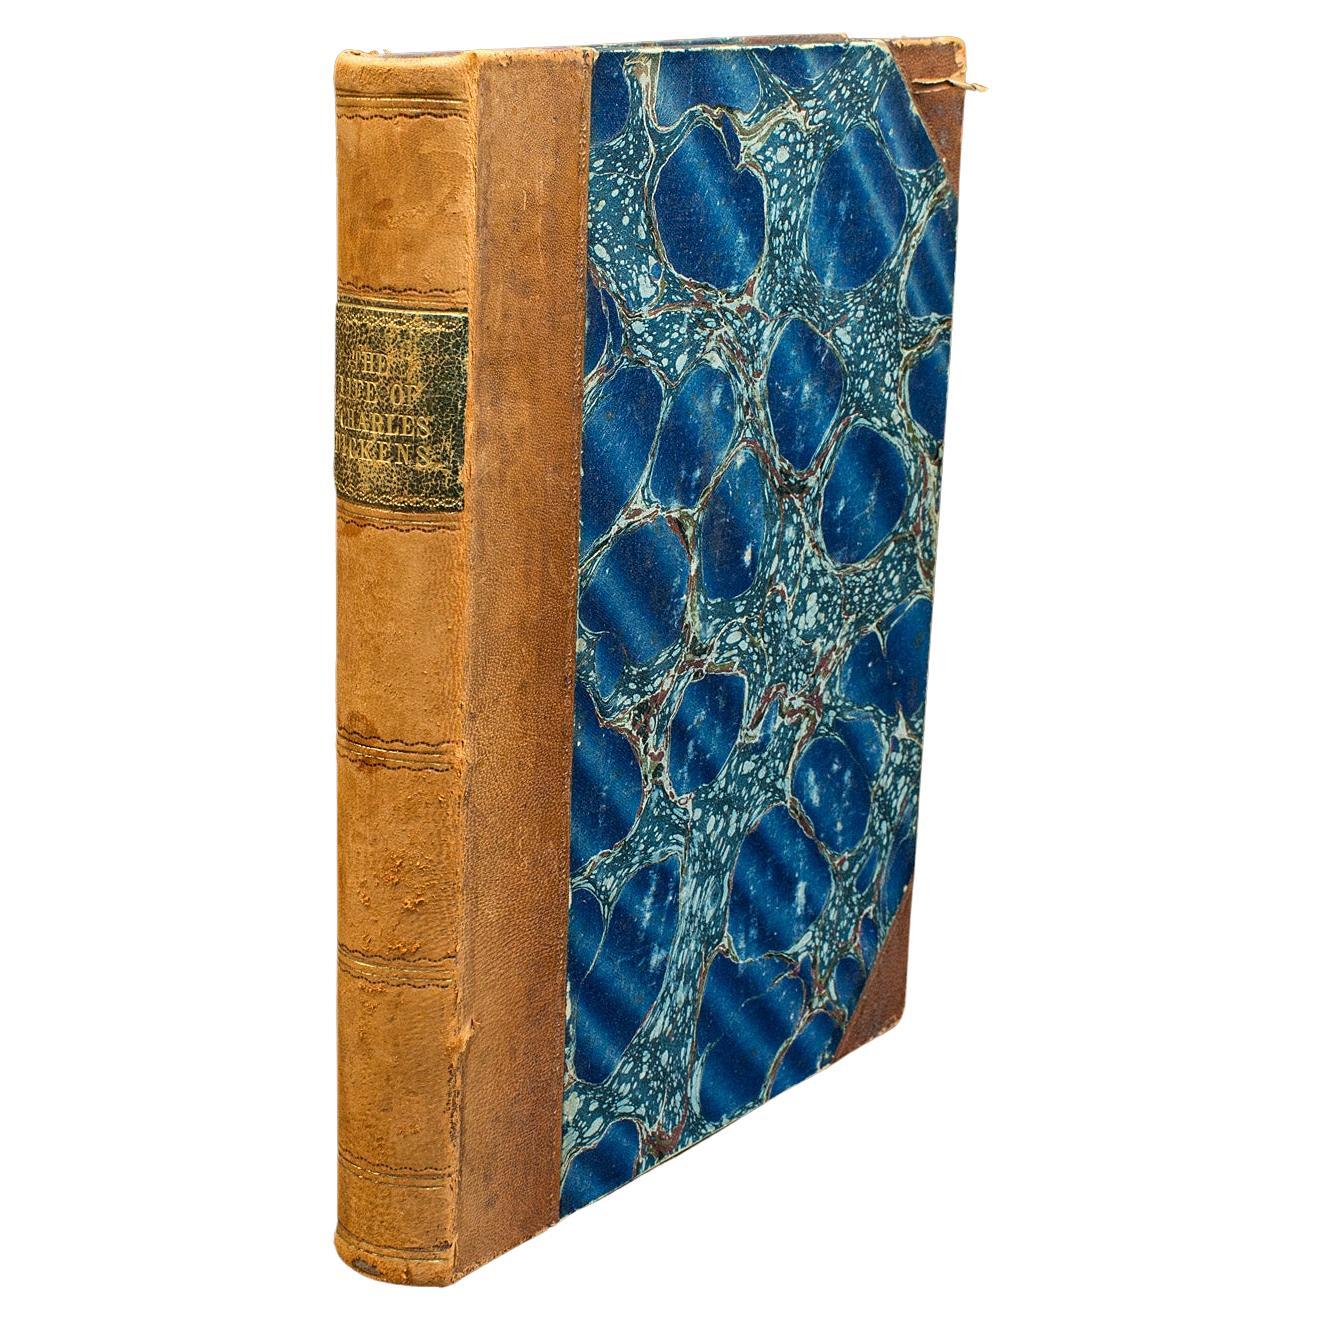 Antikes Buch, Das Leben von Charles Dickens, Biografie, englisch, viktorianisch, um 1880